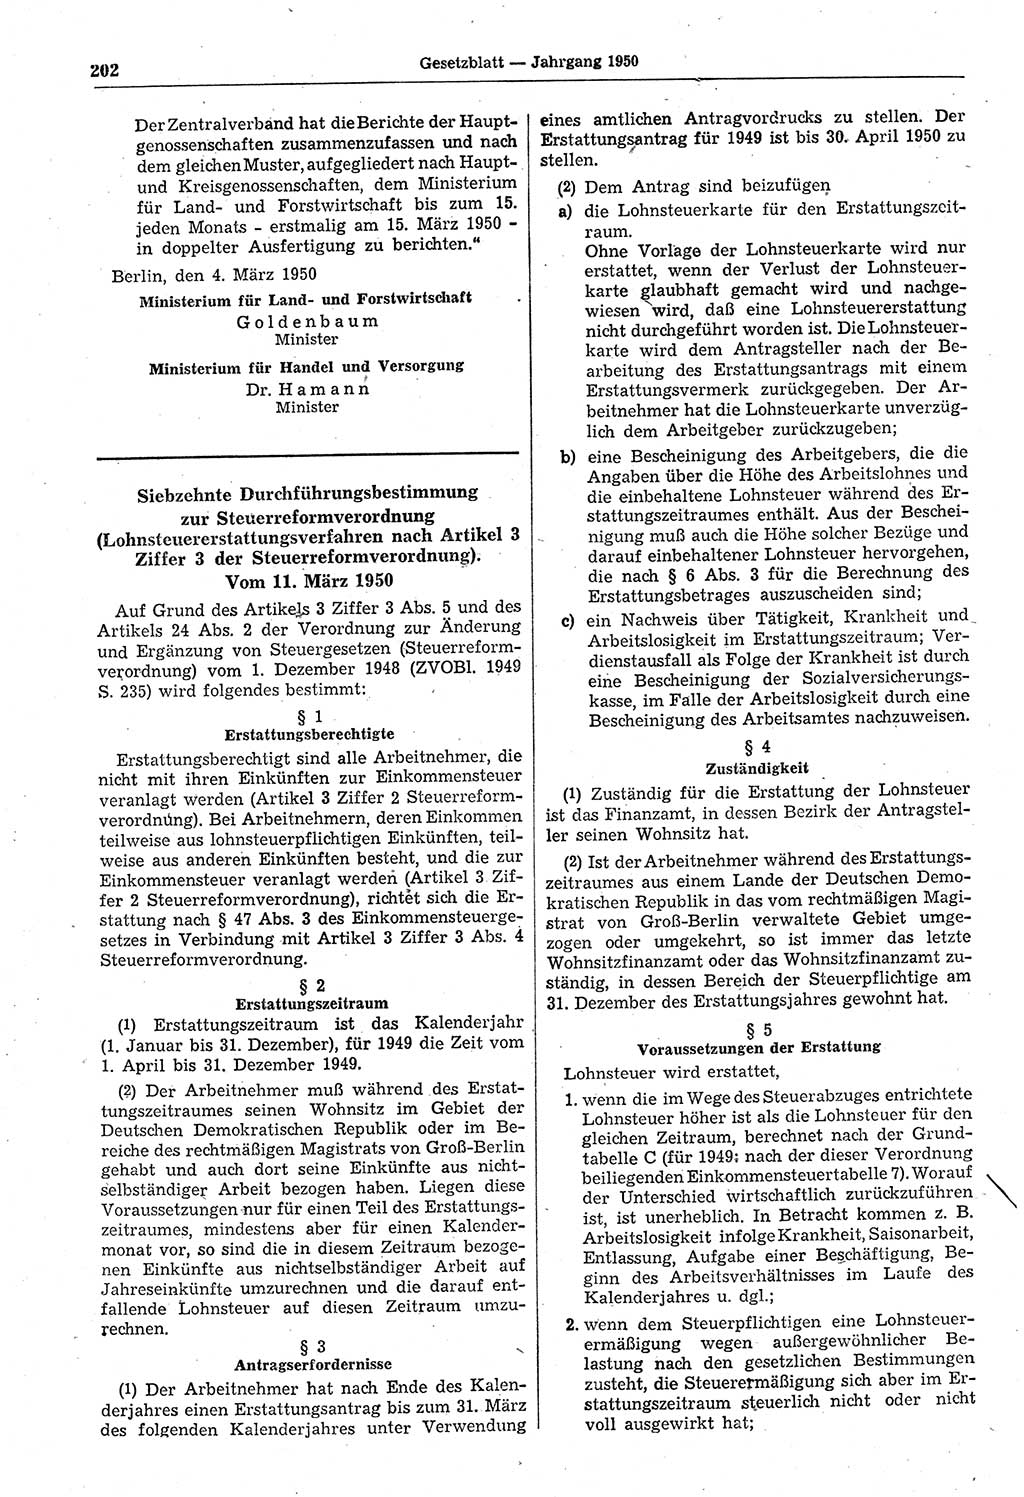 Gesetzblatt (GBl.) der Deutschen Demokratischen Republik (DDR) 1950, Seite 202 (GBl. DDR 1950, S. 202)